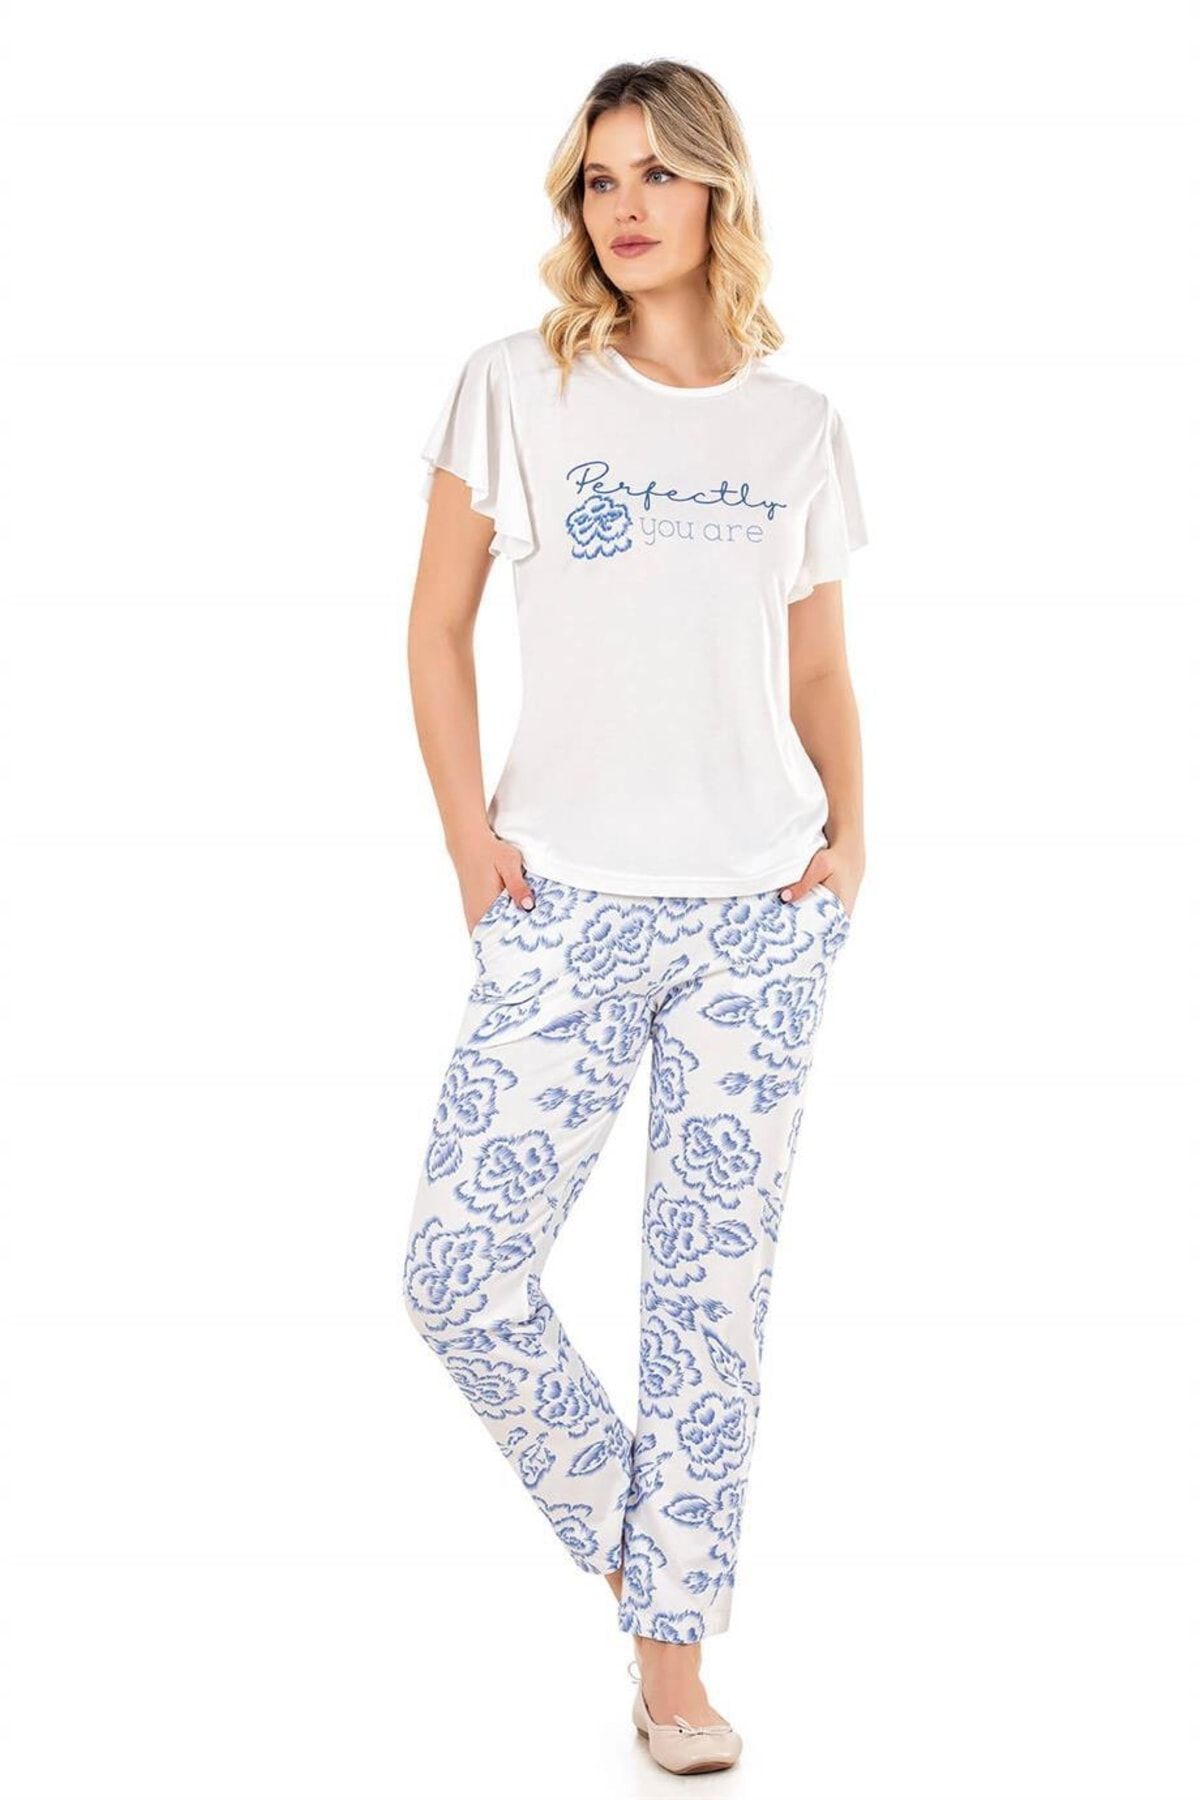 Flz Pijama Kadın Yazlık Moda Pamuk Kısa Kol Perfectly Baskılı Pijama Takımı Homewear 88-42